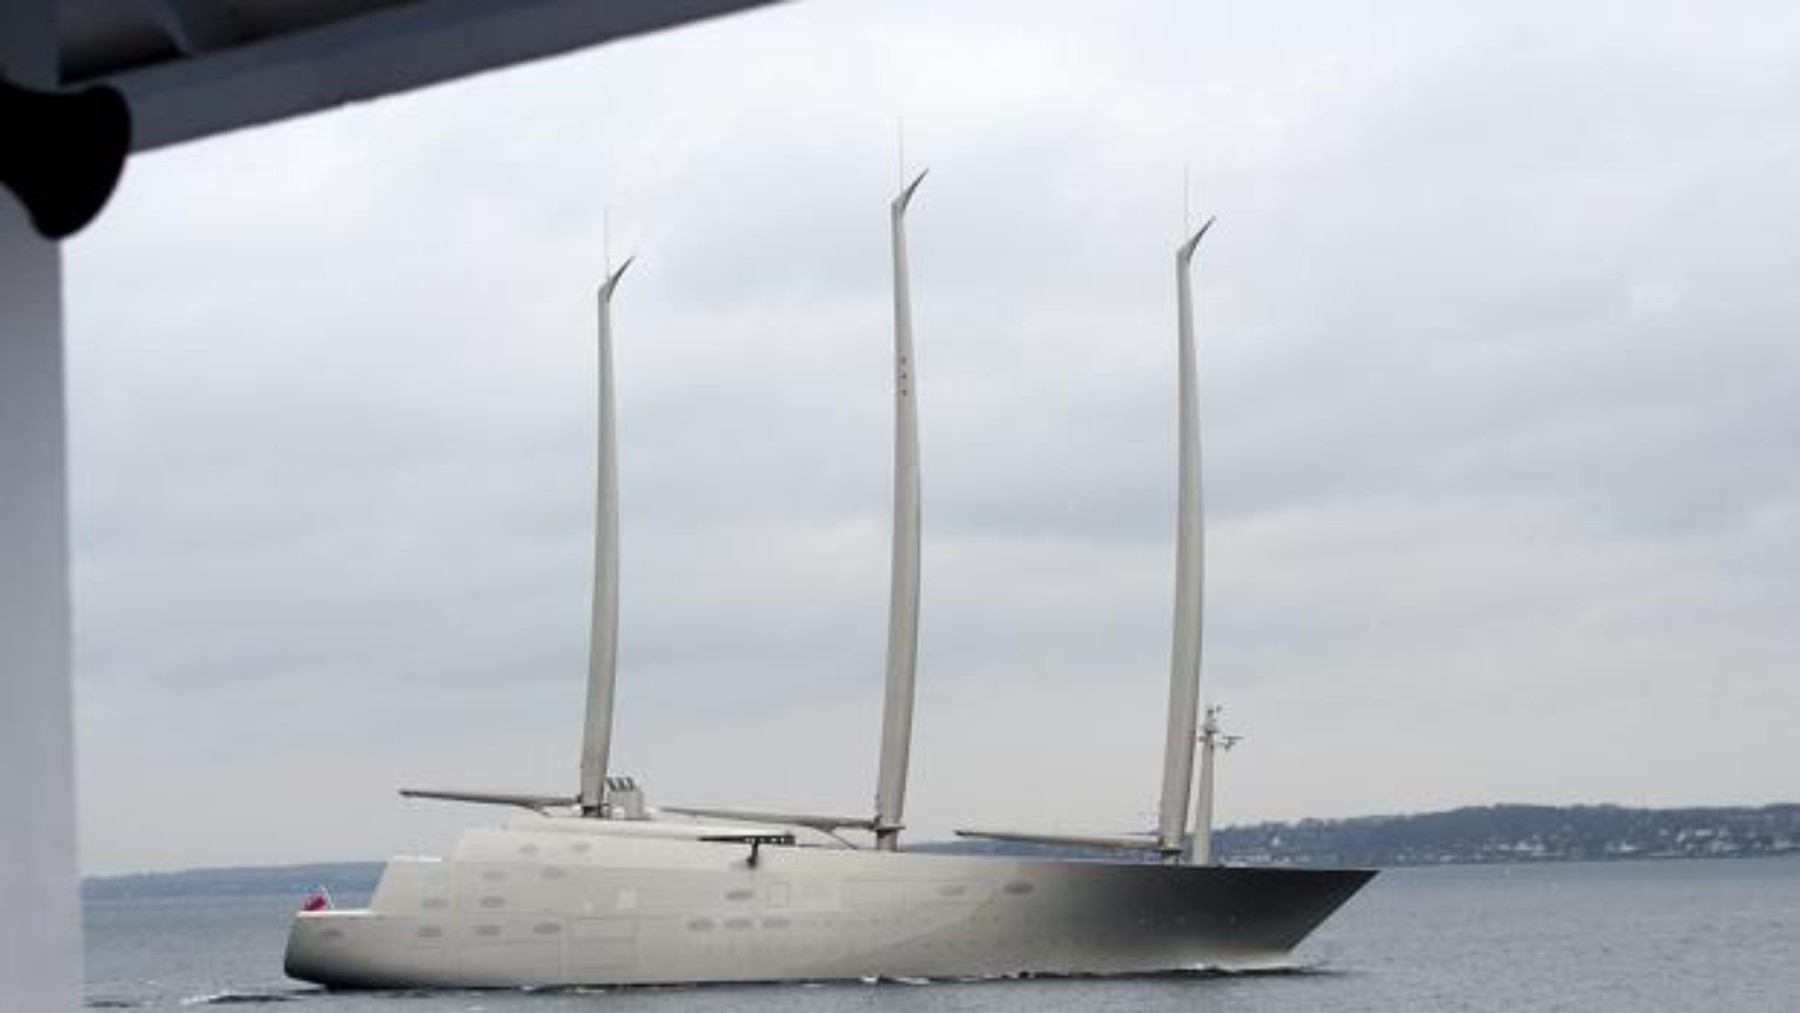 El ‘Sailing Yacht A’, el velero más grande del mundo. (Foto KELD NAVNTOF)T